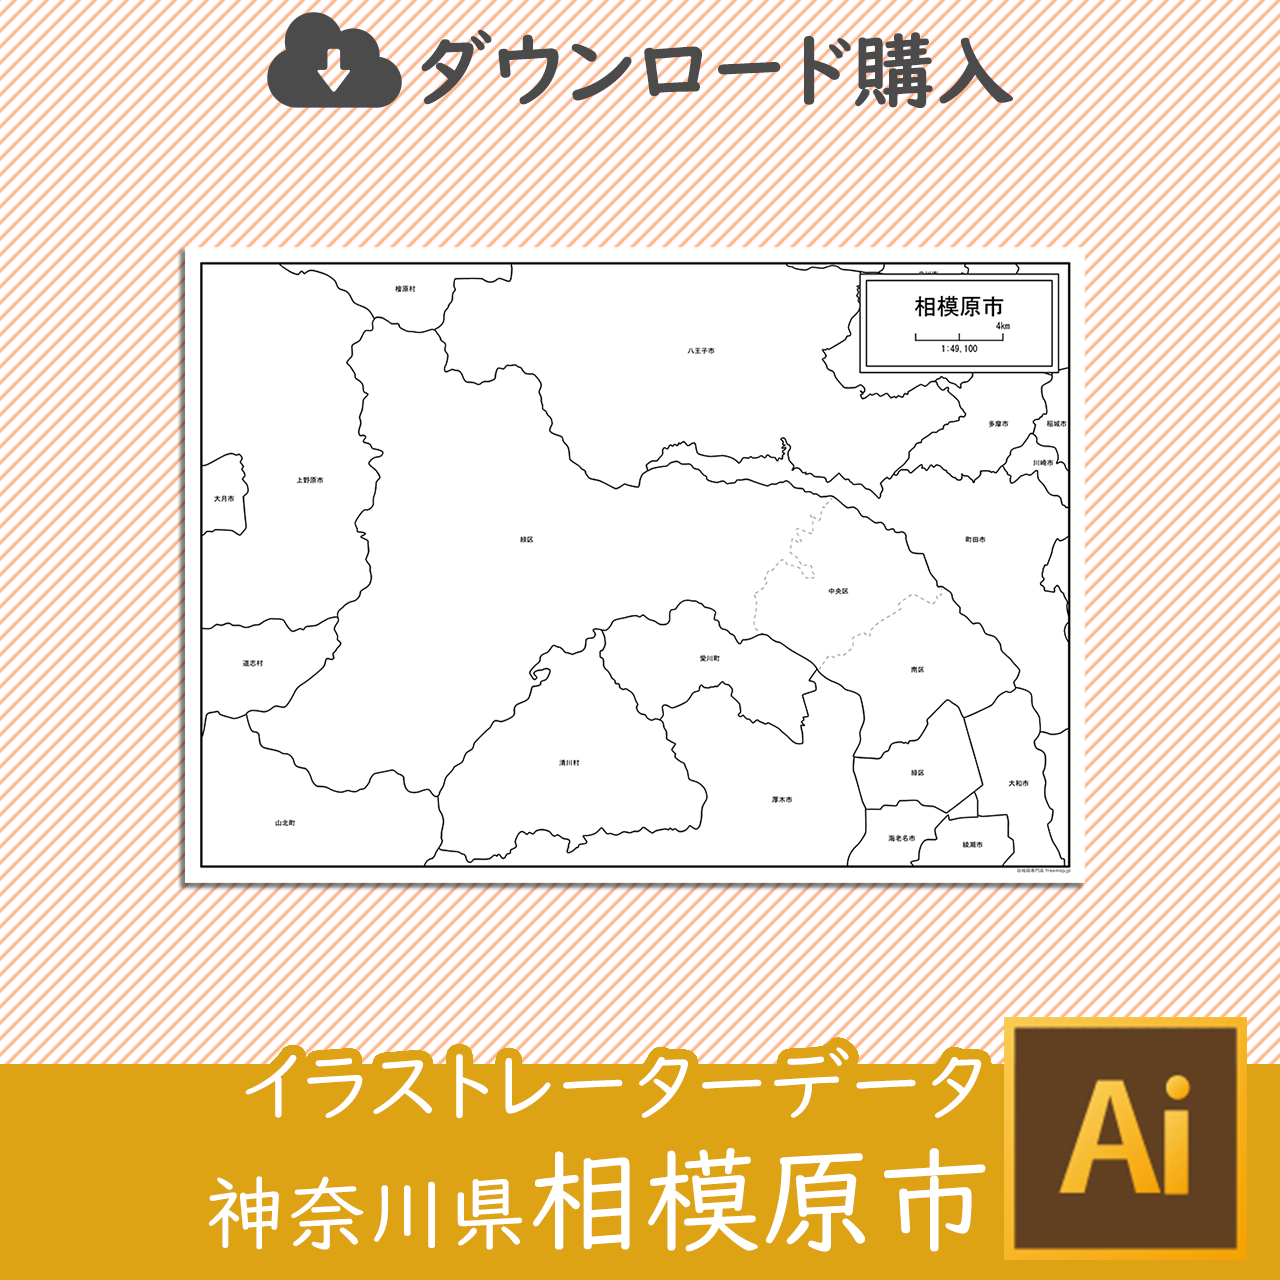 神奈川県相模原市のaiデータのサムネイル画像